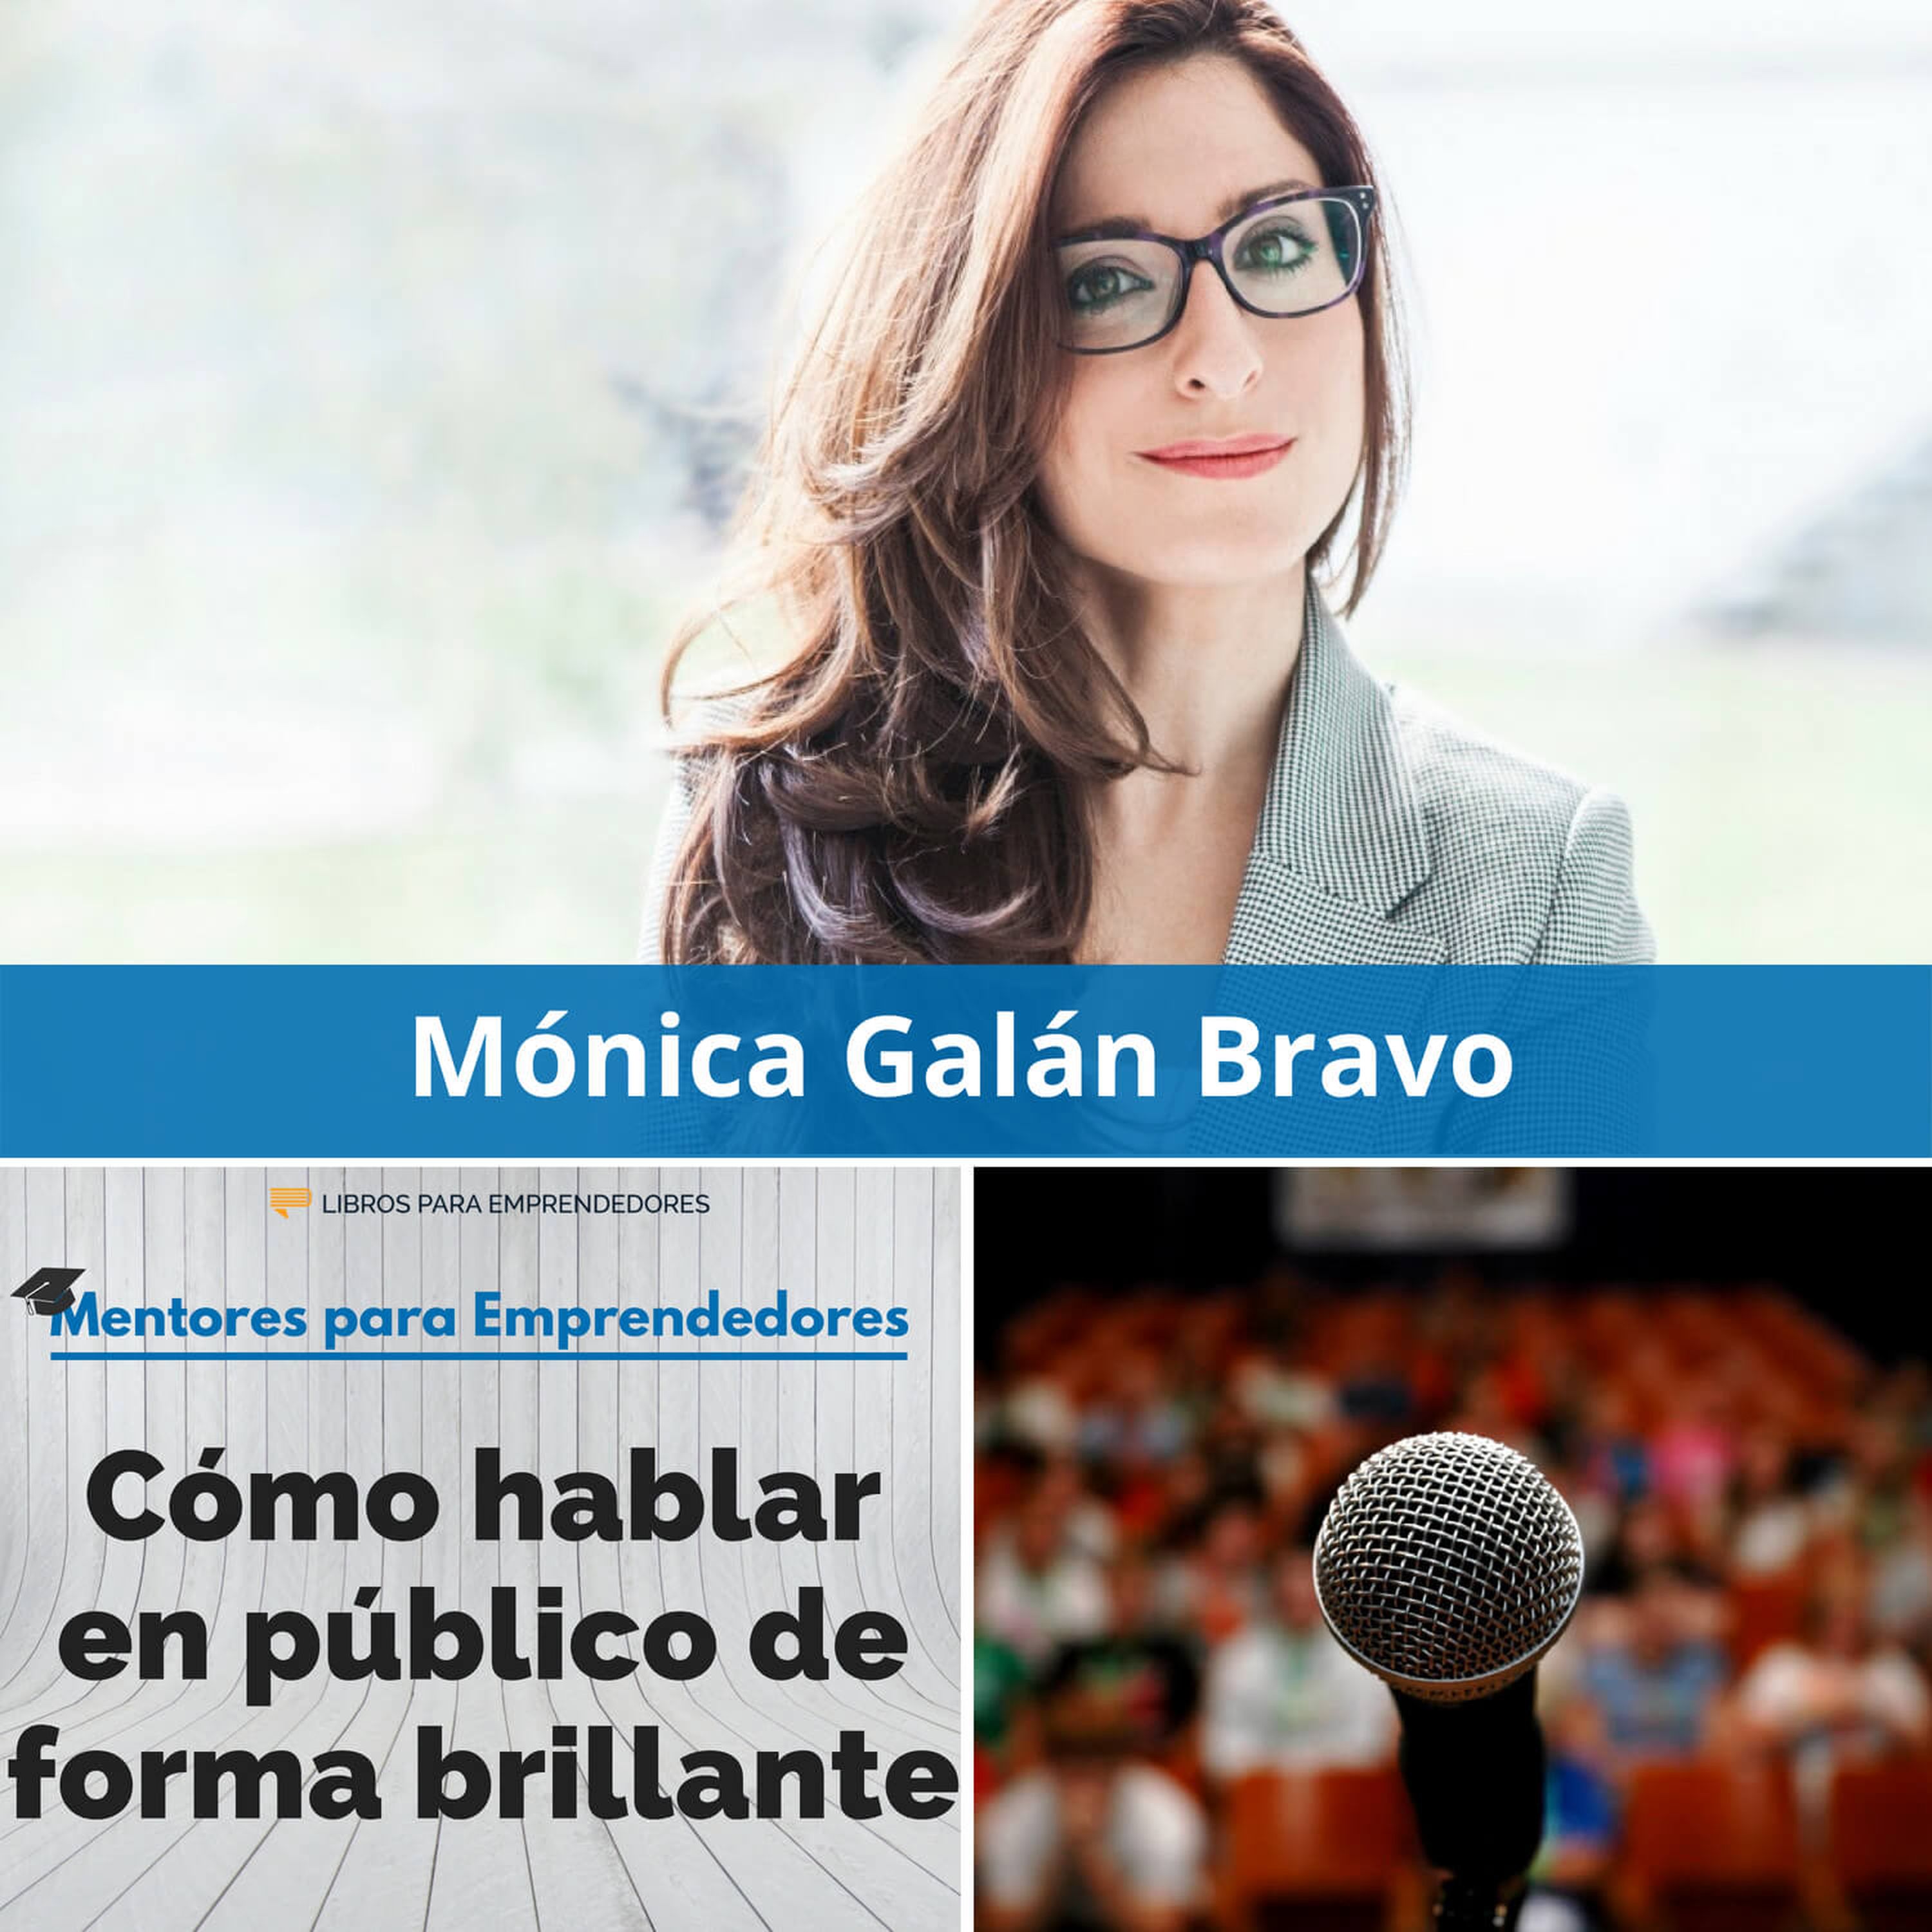 Cómo hablar en público de forma brillante, con Mónica Galán Bravo - MPE029 - Mentores para Emprendedores